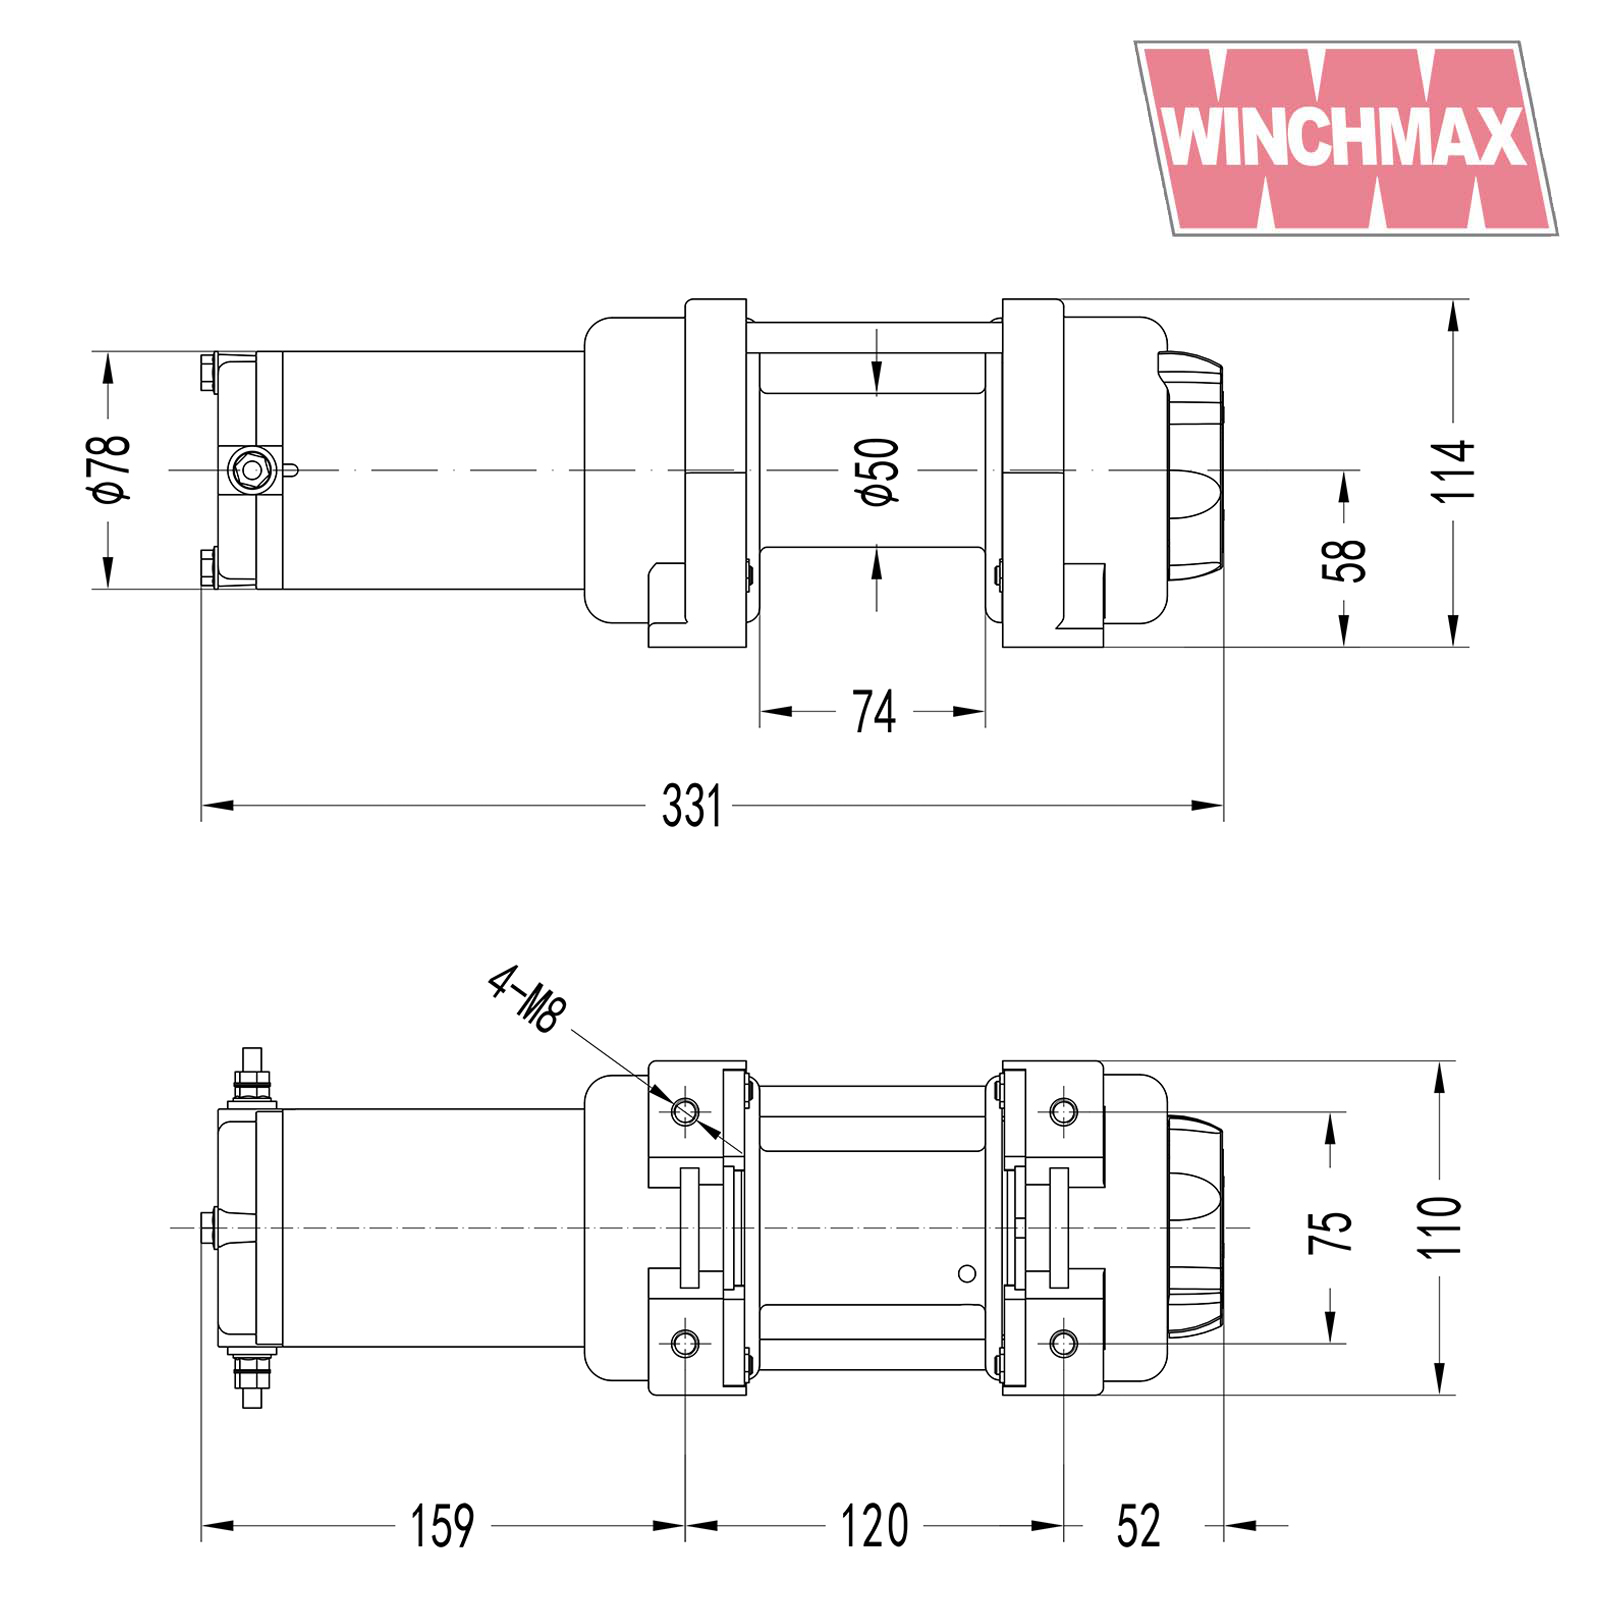 WINCHMAX AC 3000lb winch